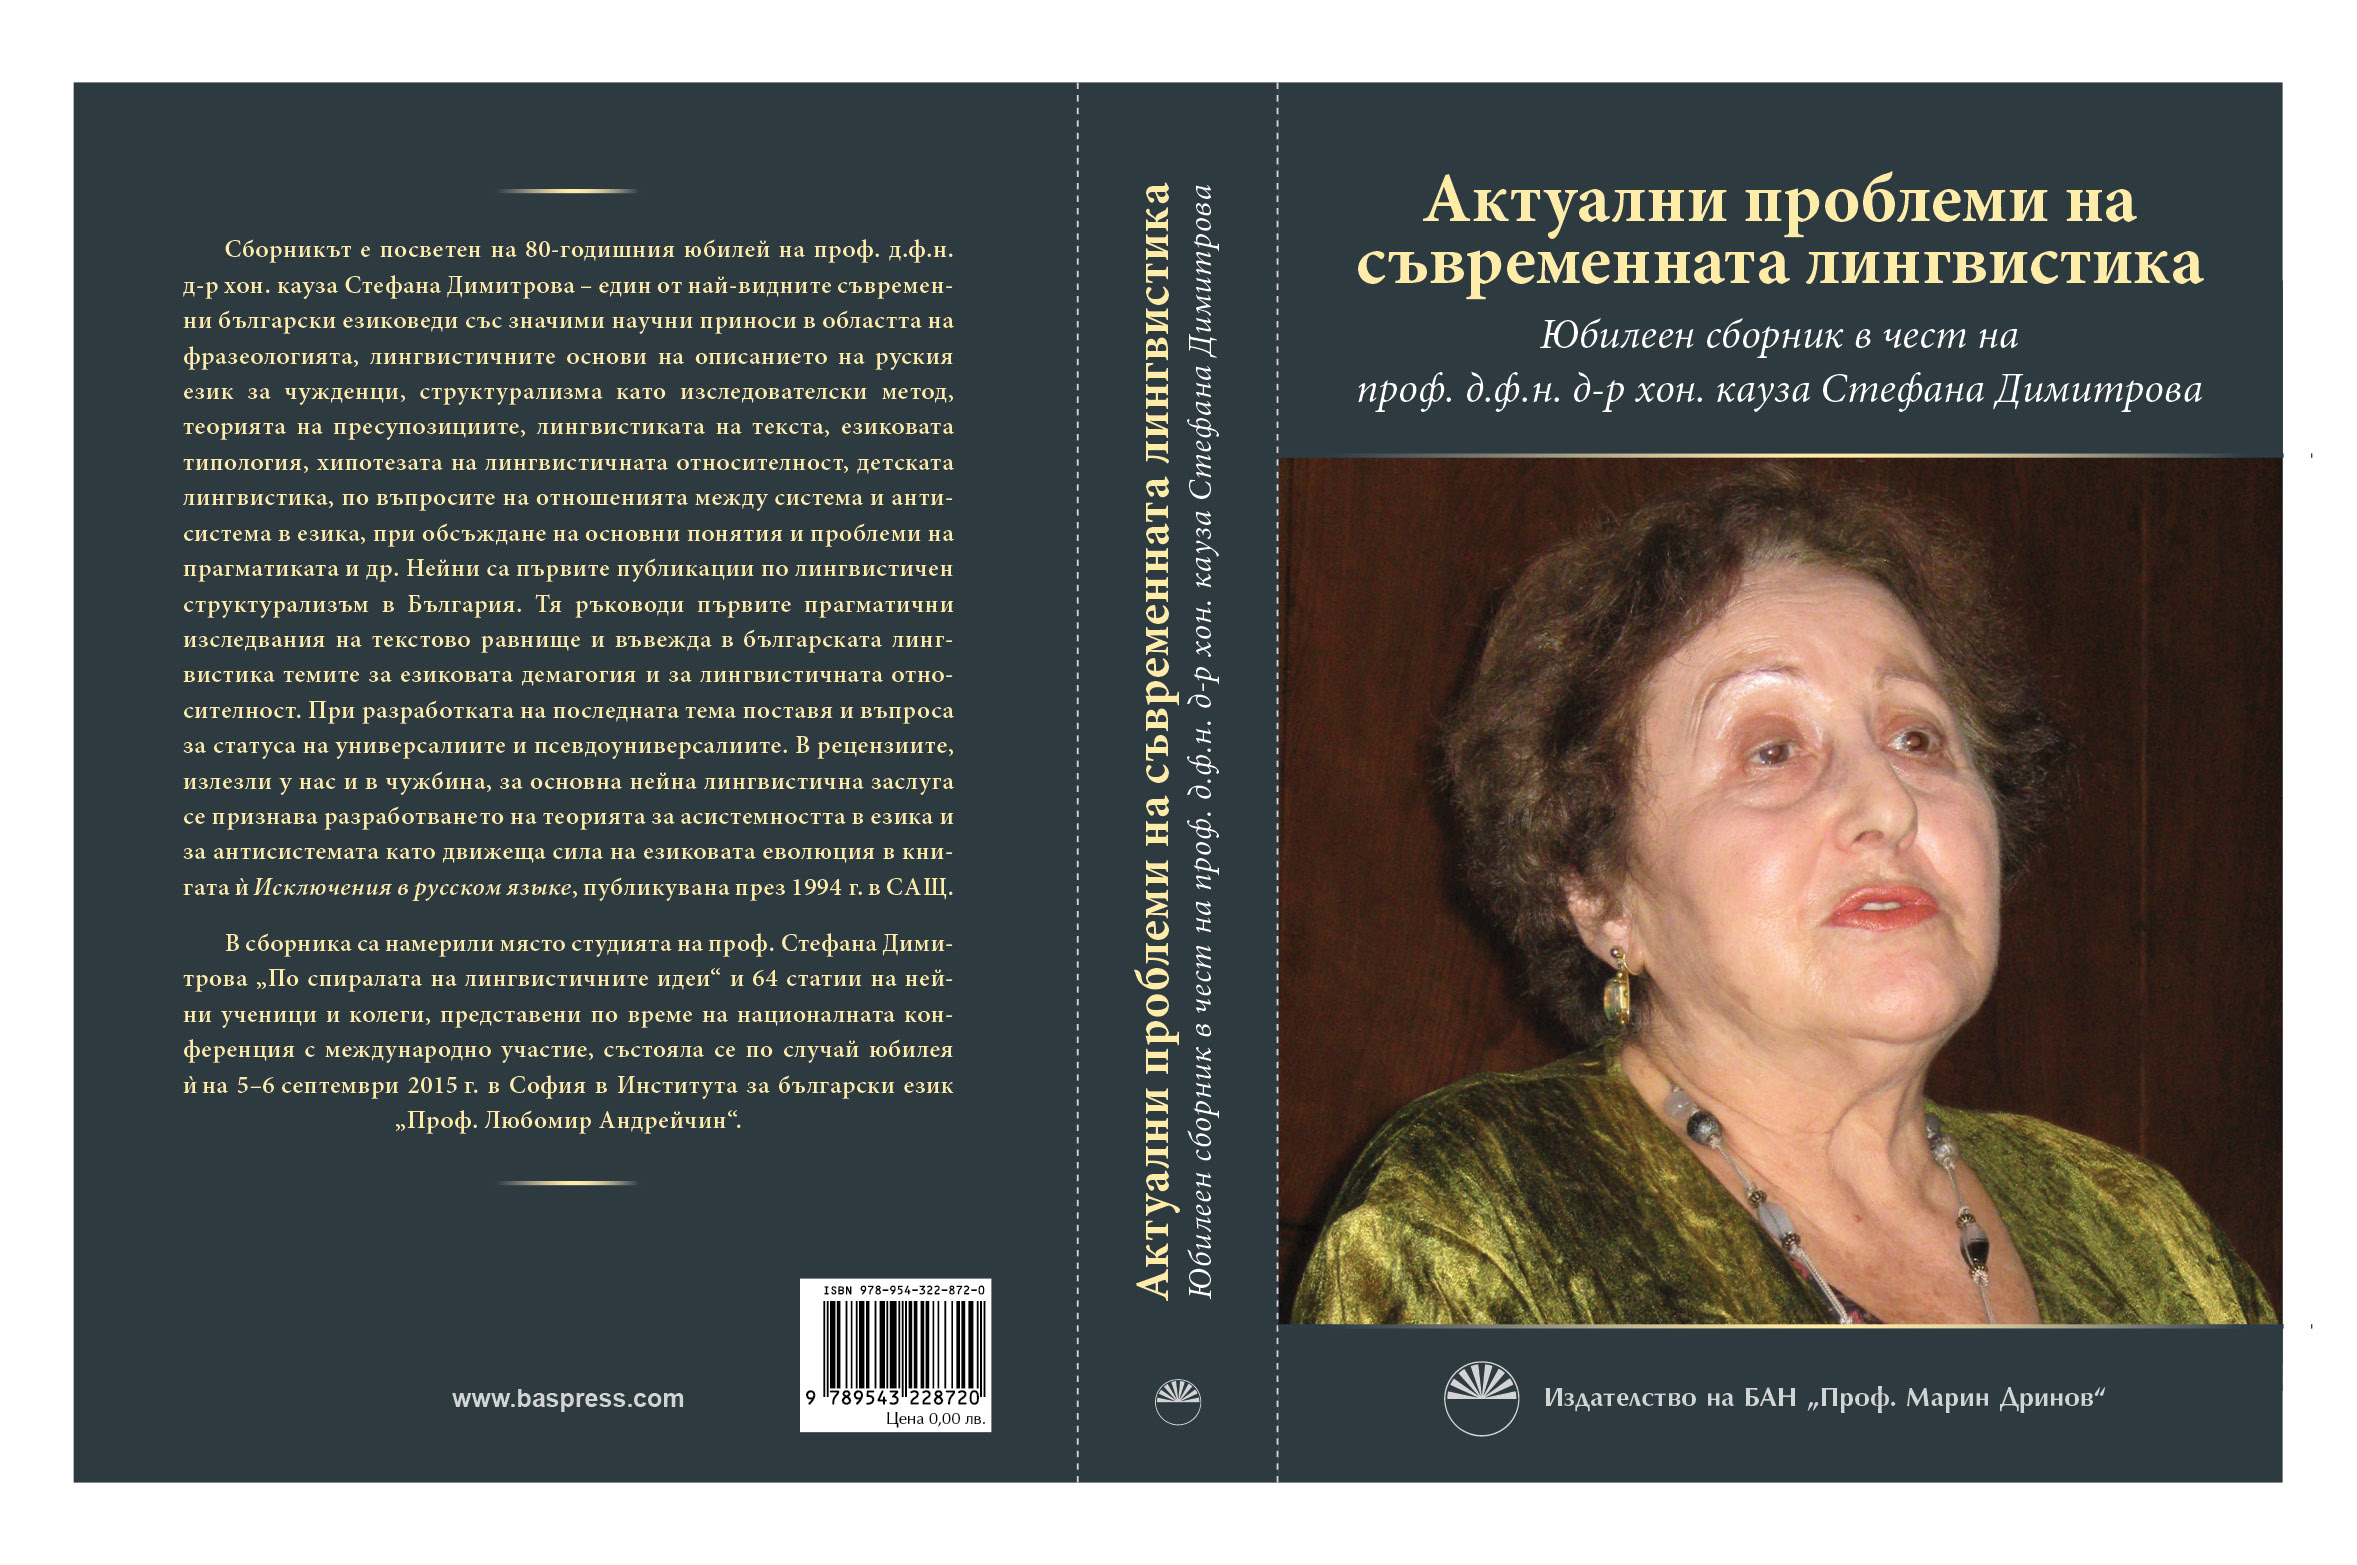 Сборникът по случай 80-годишния юбилей на проф. д.ф.н. д-р хон. кауза Стефана Димитрова